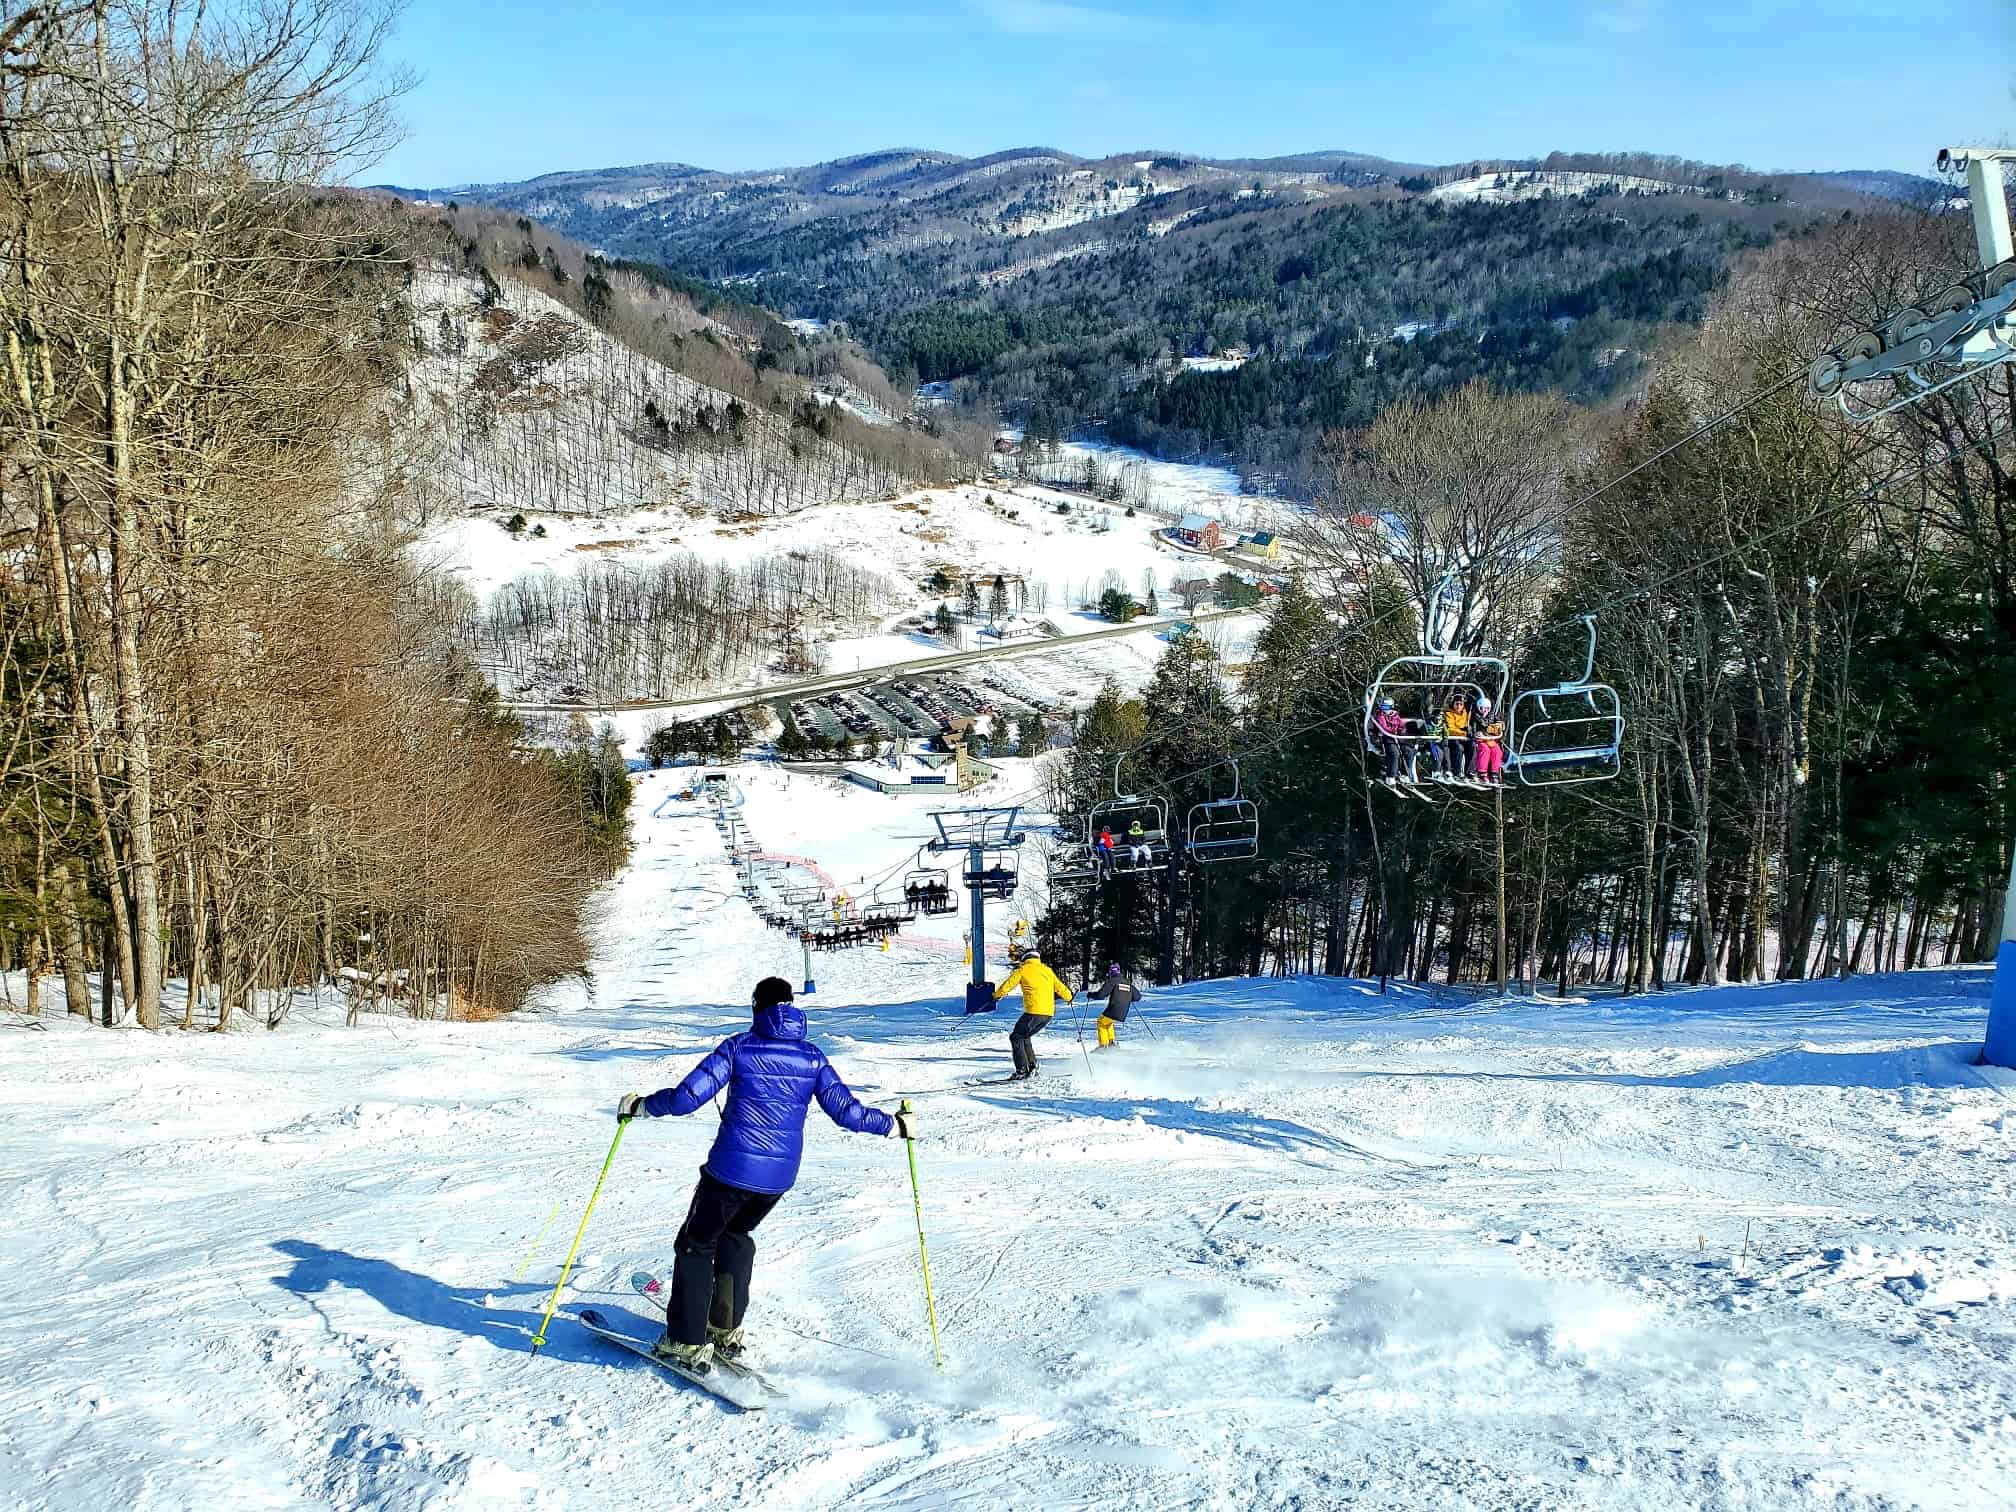 Saskadena Six - Downhill Skiing and Chairlift